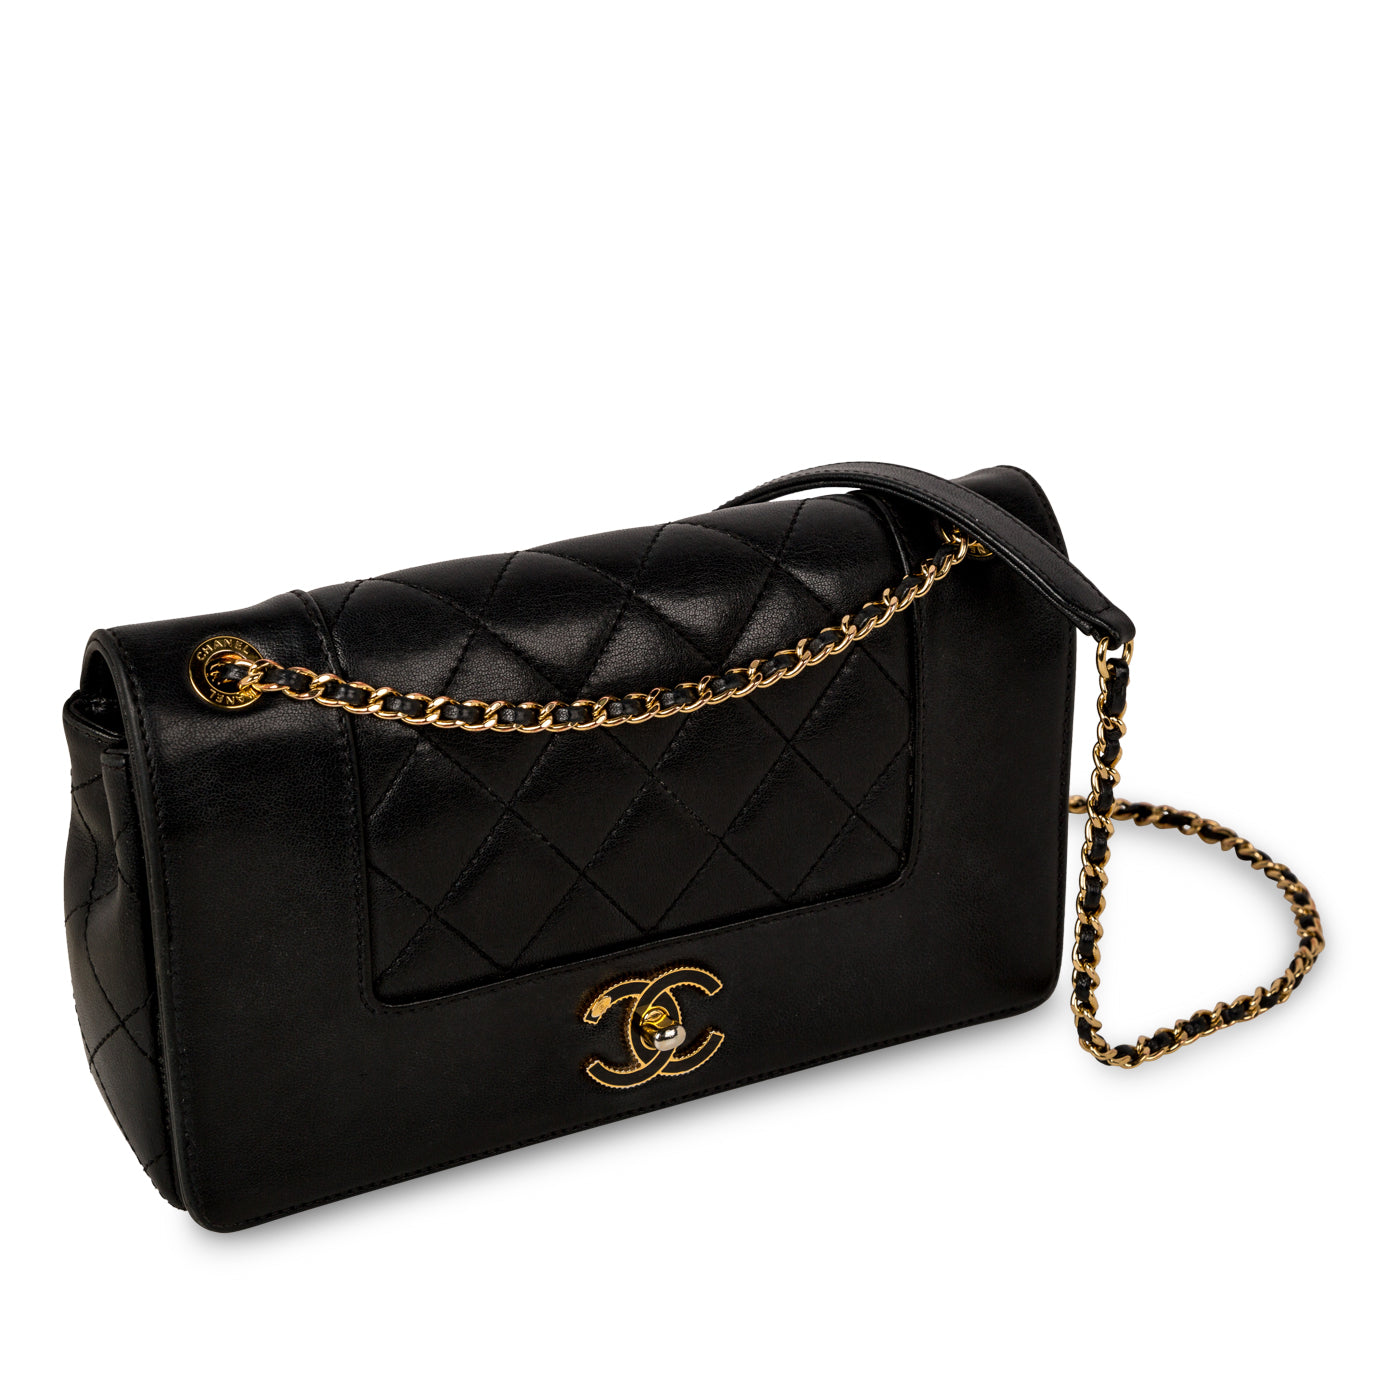 Chanel - Paris in Rome Flap Bag - Black - GHW - Pre-Loved